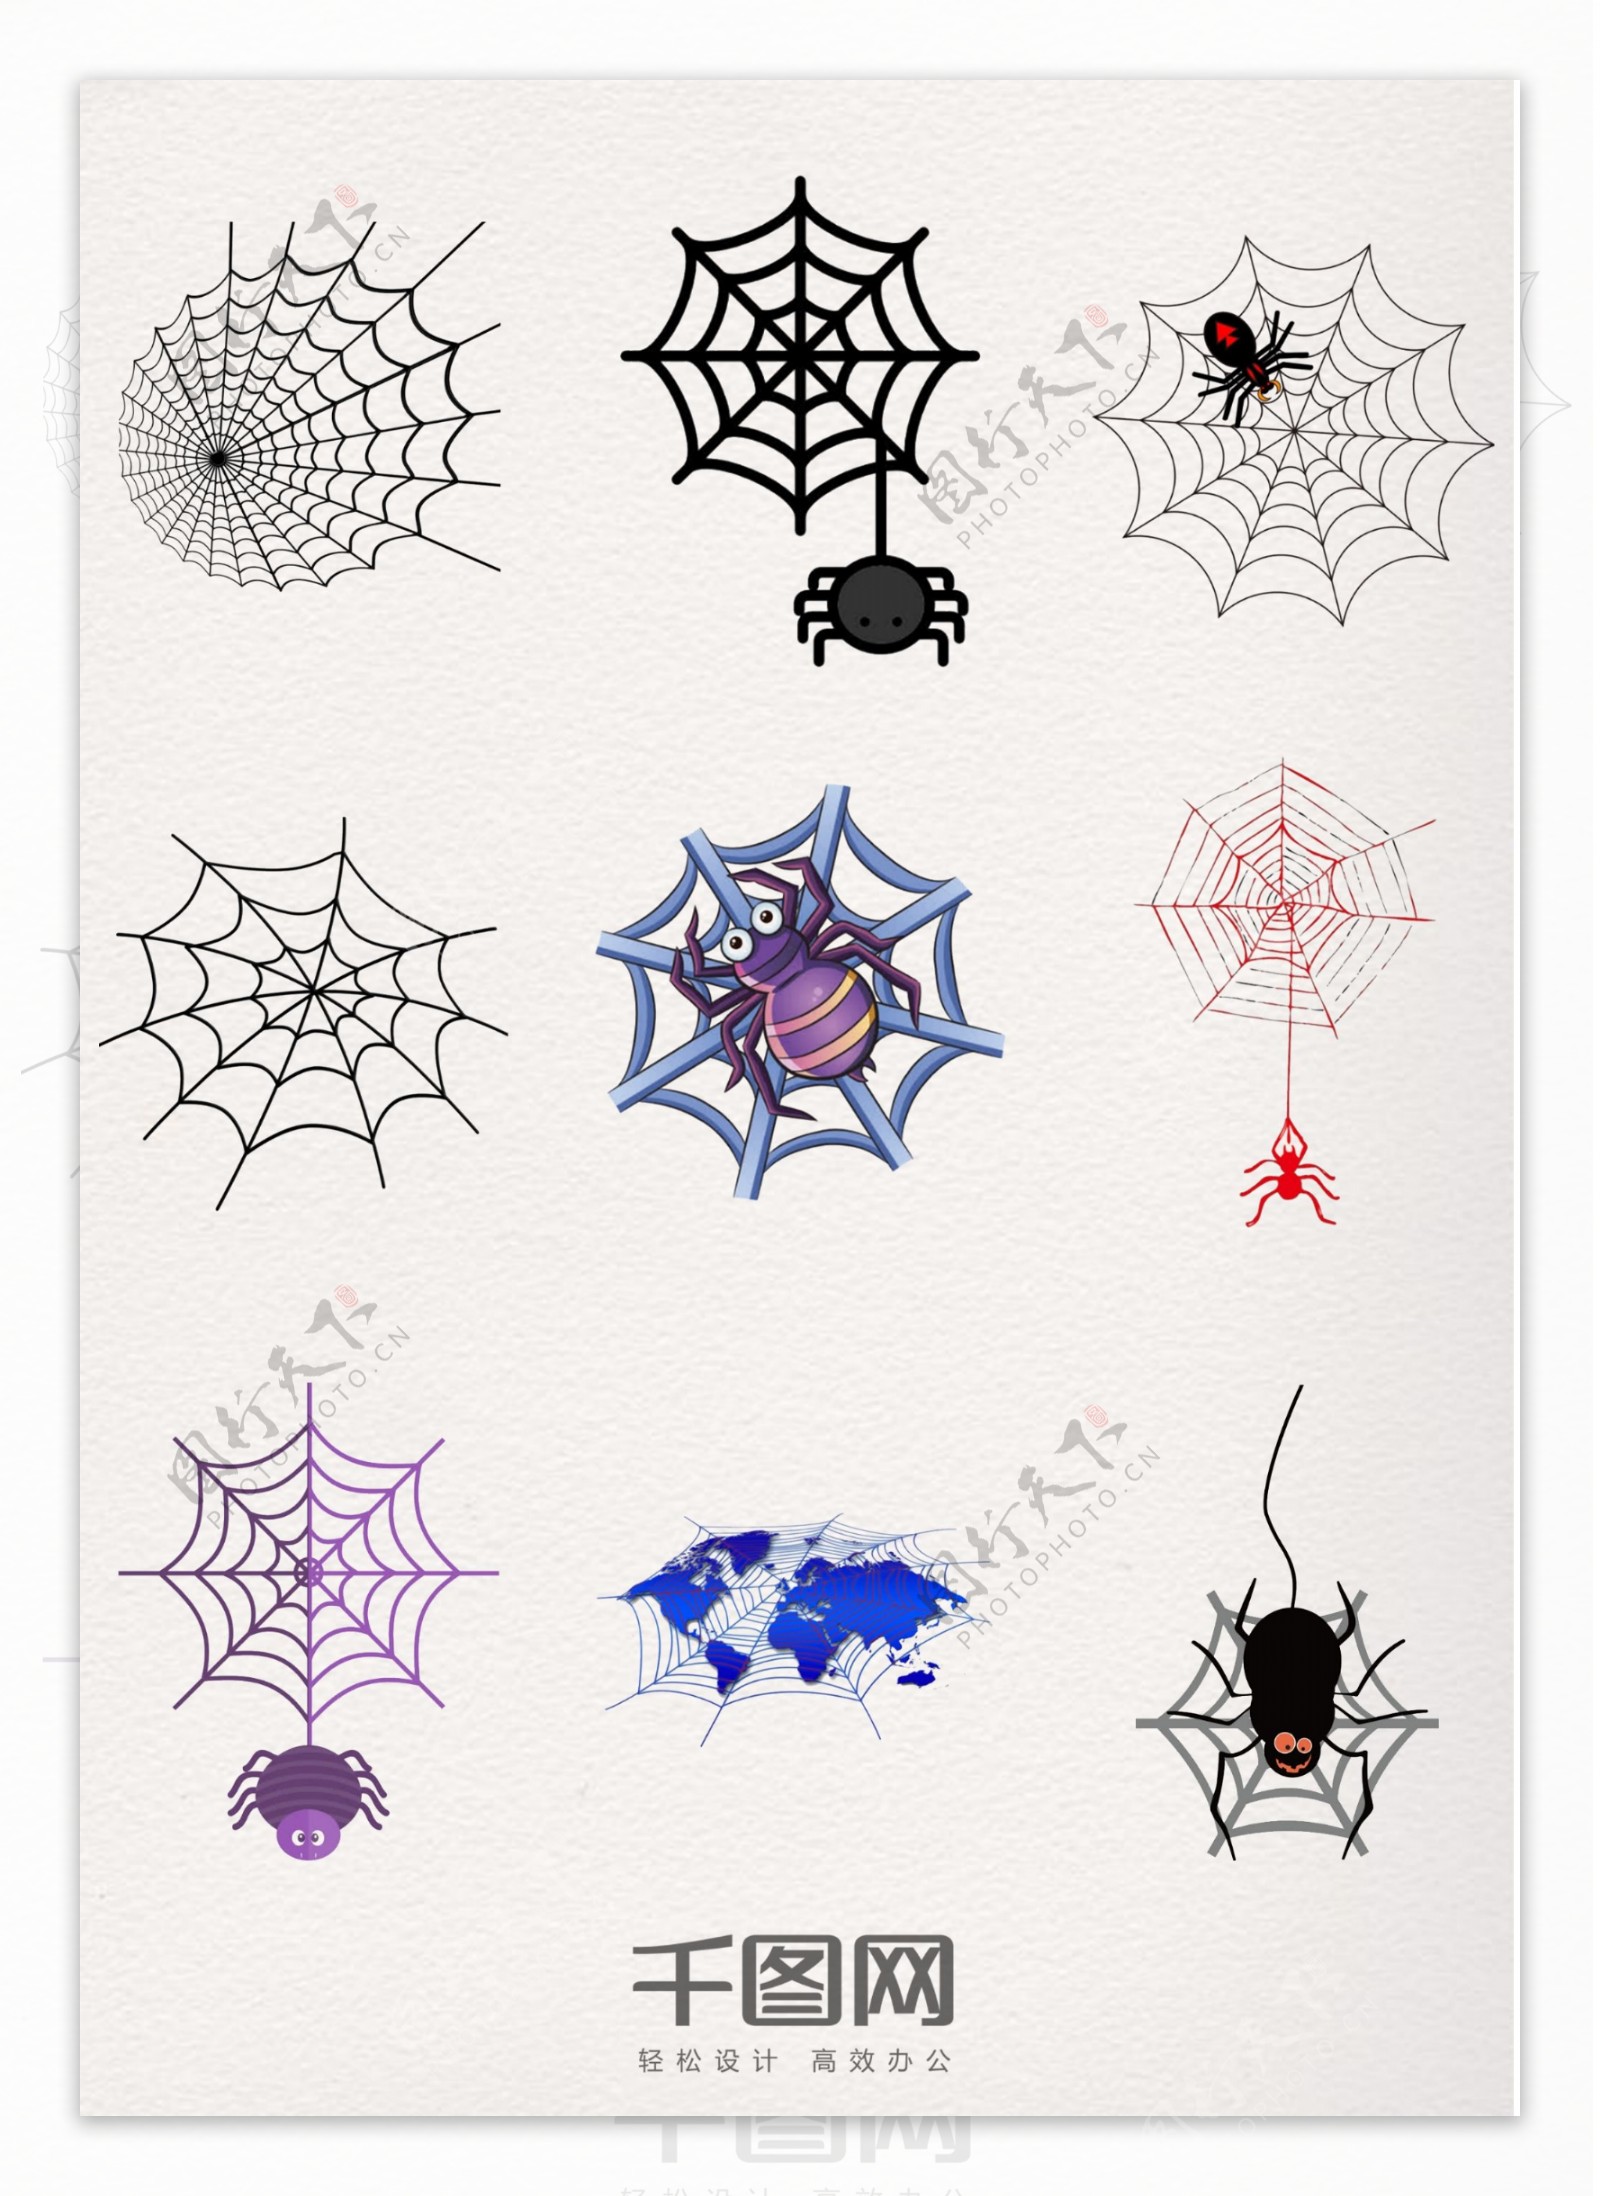 装饰元素蜘蛛网图案